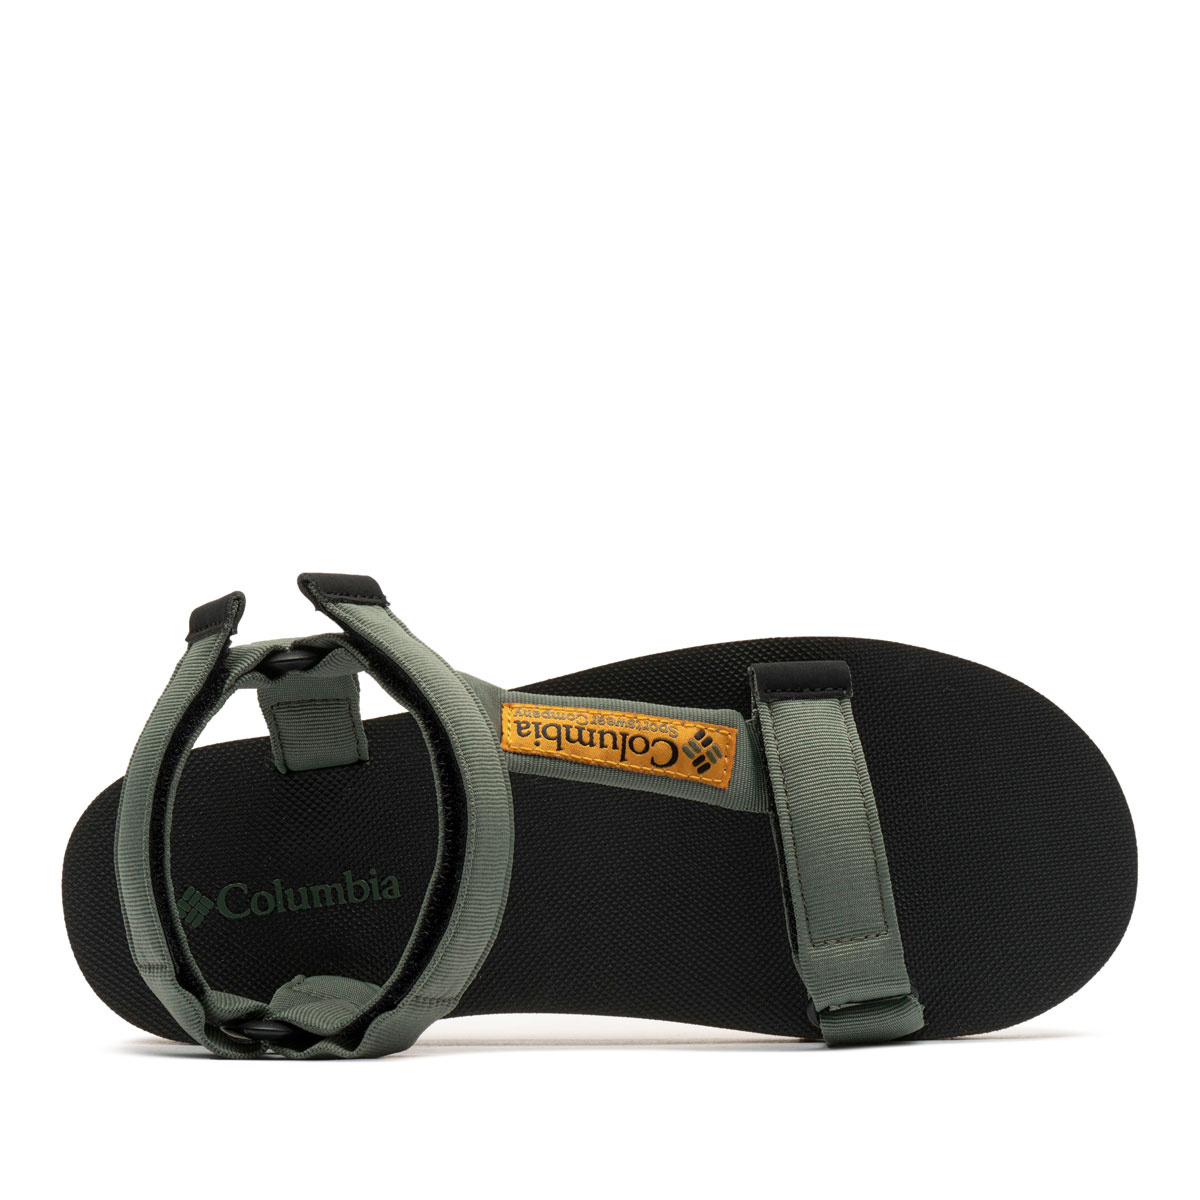 Columbia Breaksider Sandal Мъжки сандали 2027191302